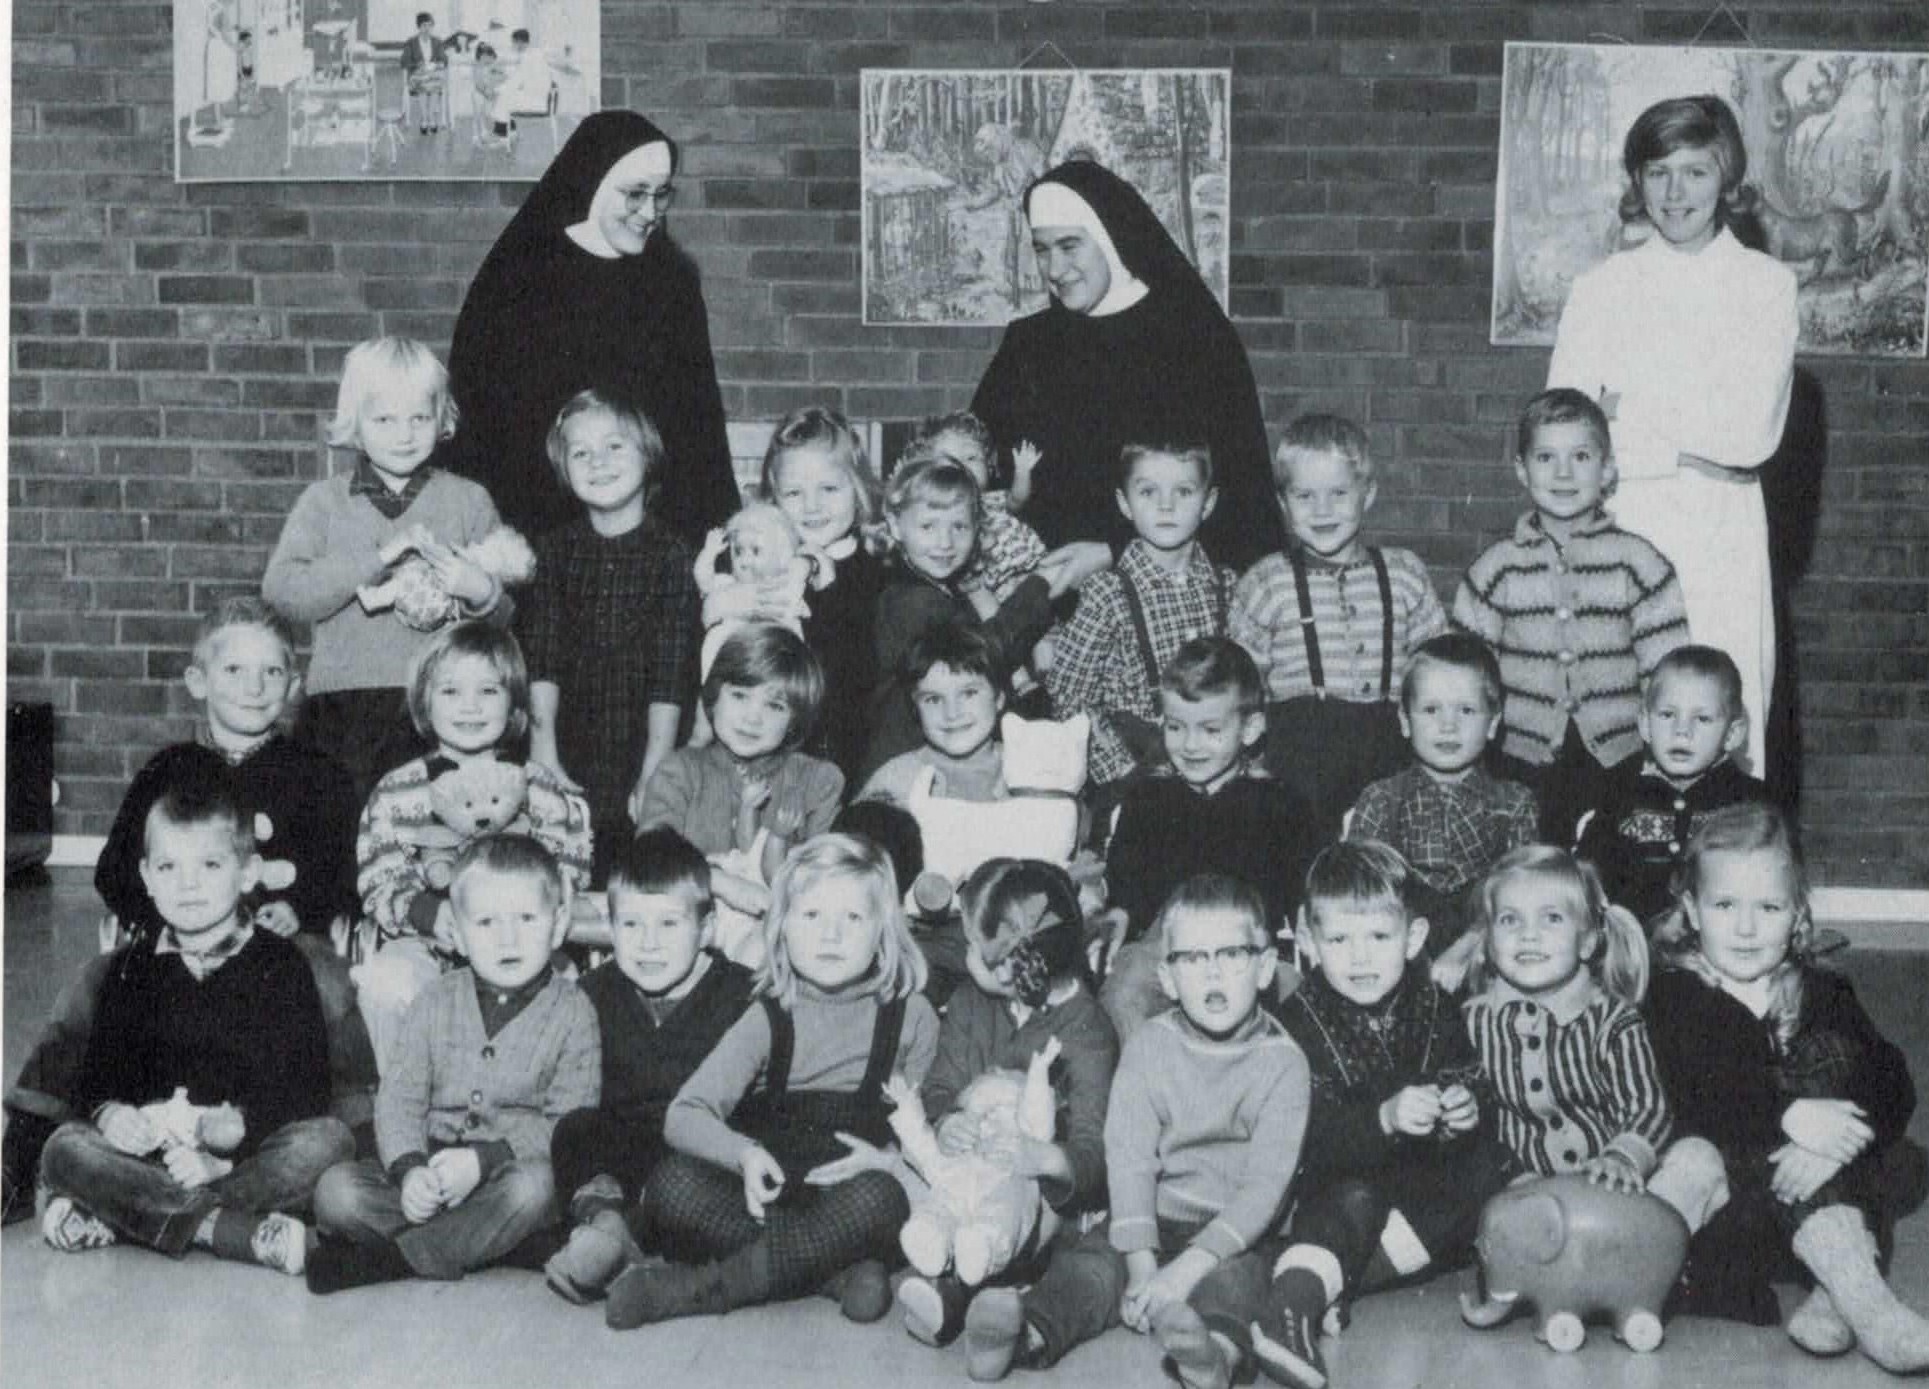 LILLESTRØM 1964: Søstrene M. Ingrid og M. Hedwig, en praktikant og mange barn.